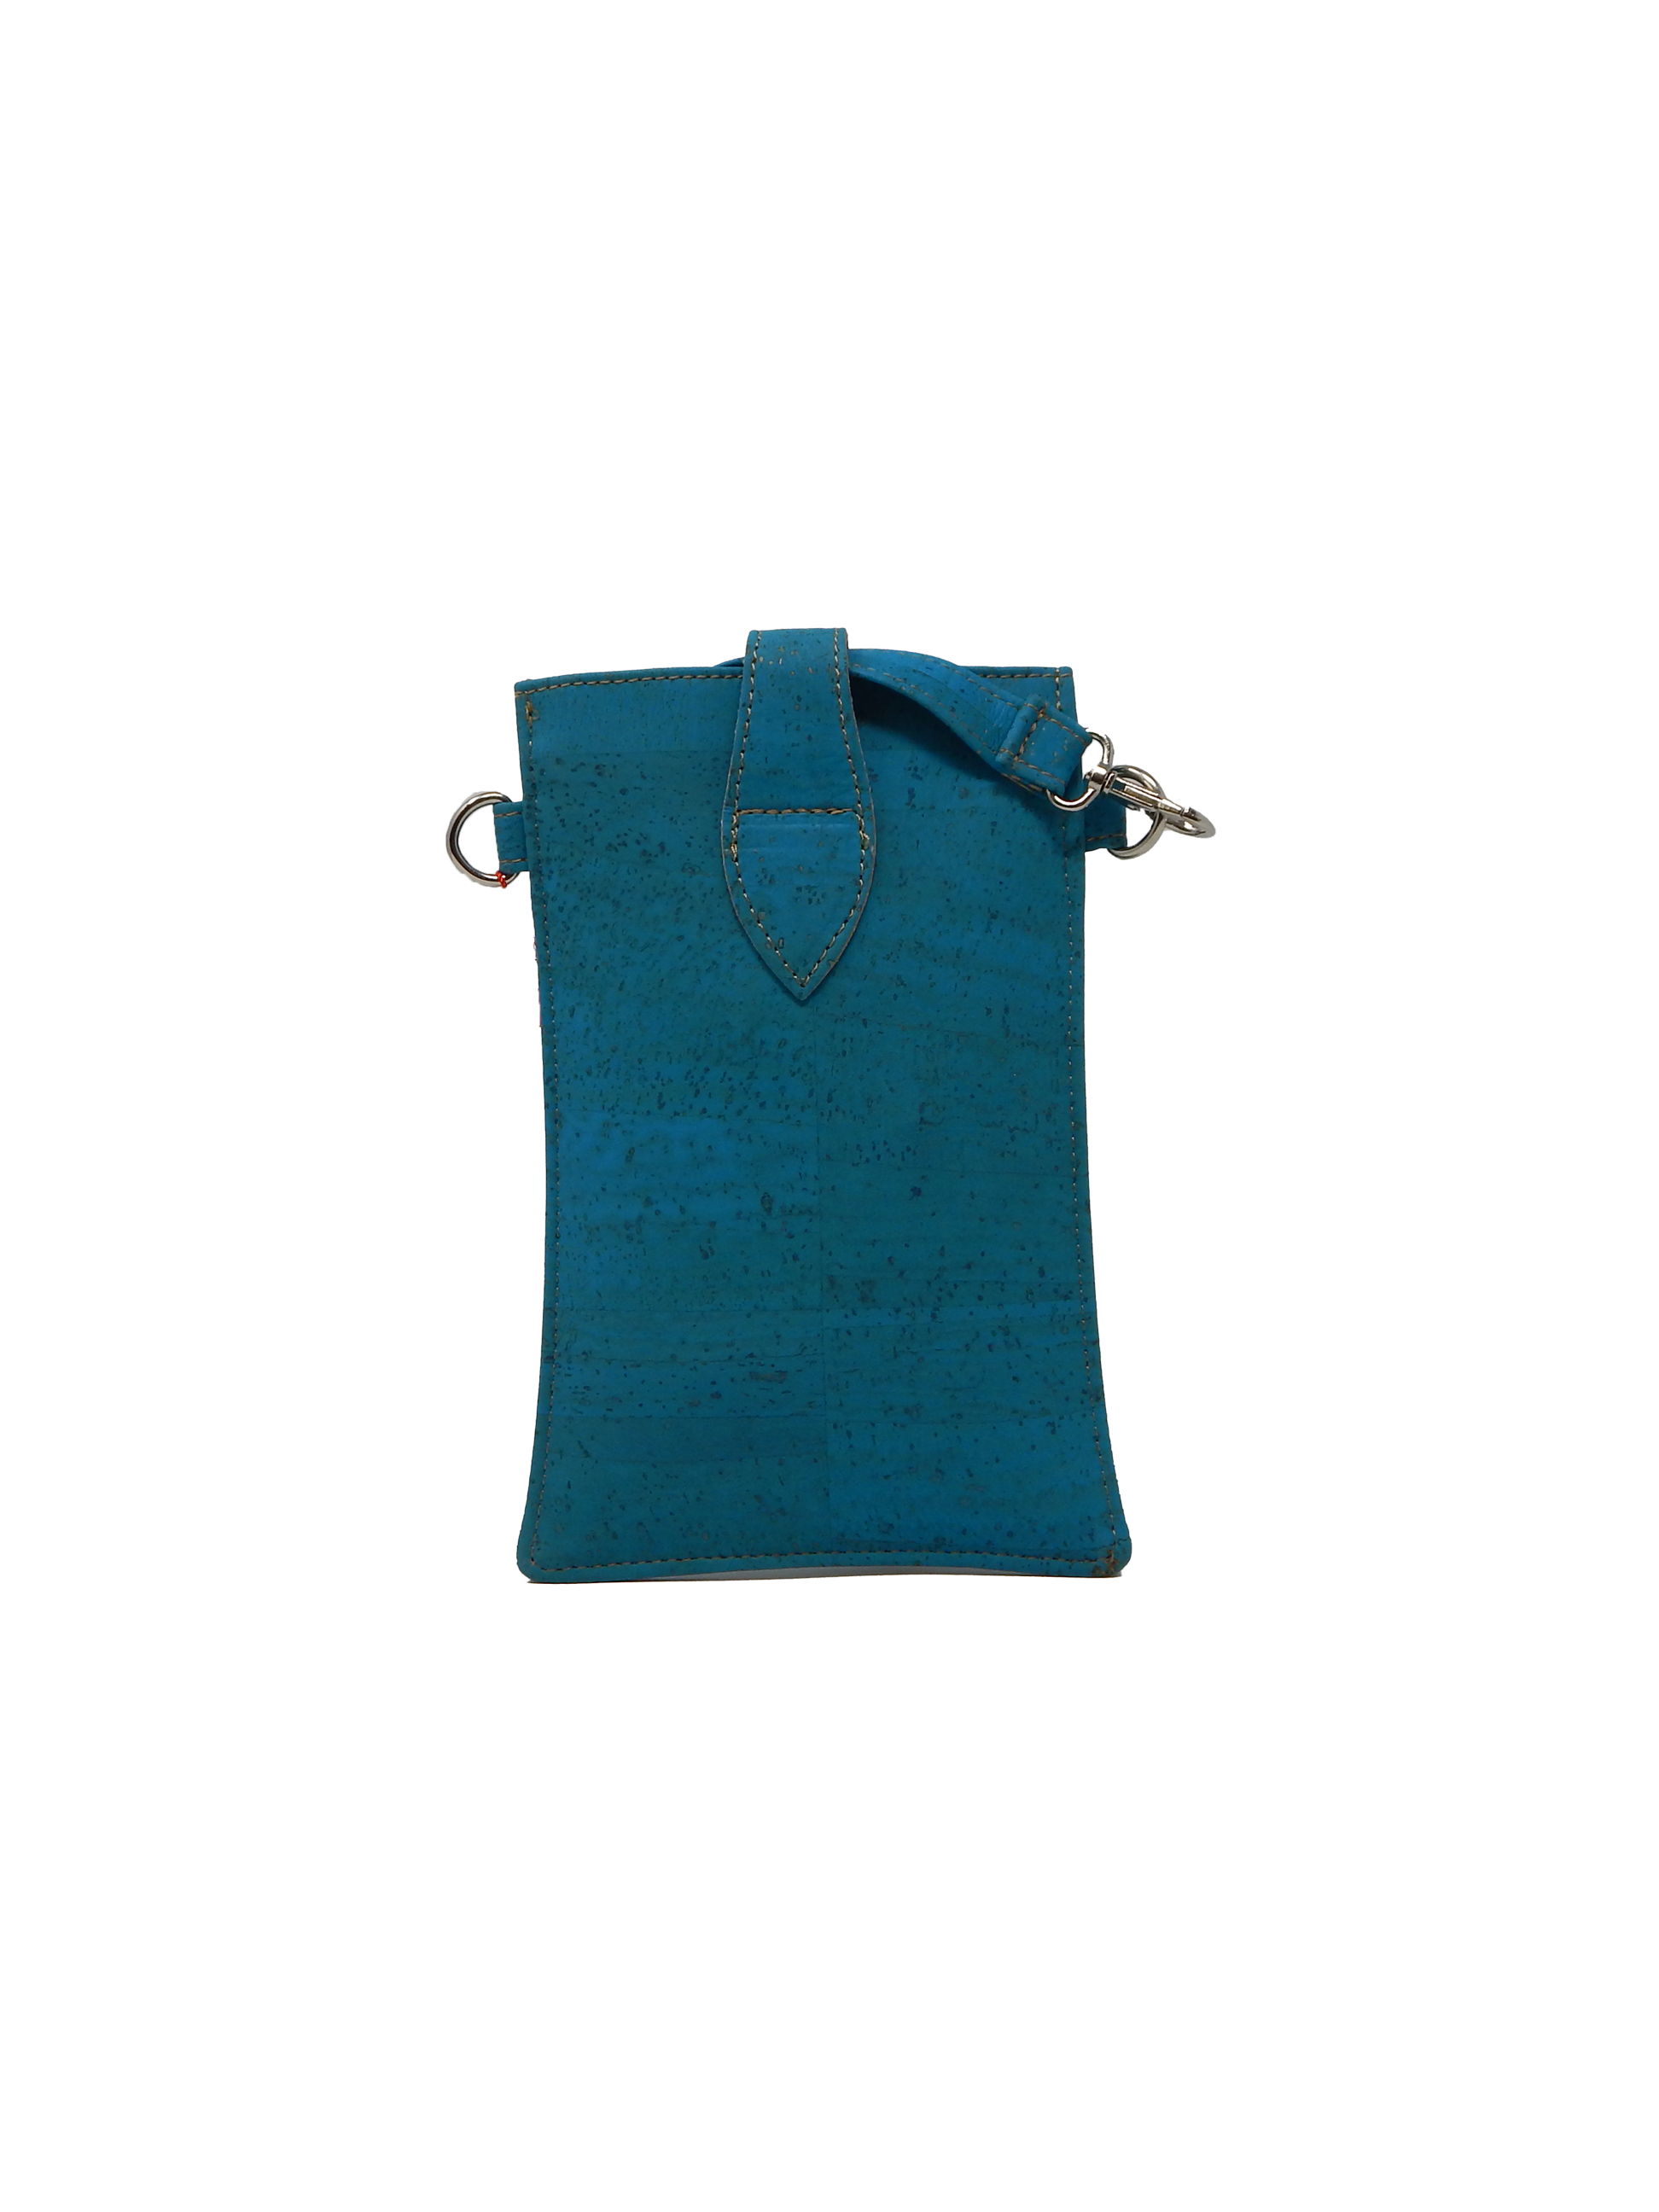 #color_ Green | Artelusa Cork Crossbody Bag - Green - 5083.14-SB02-3